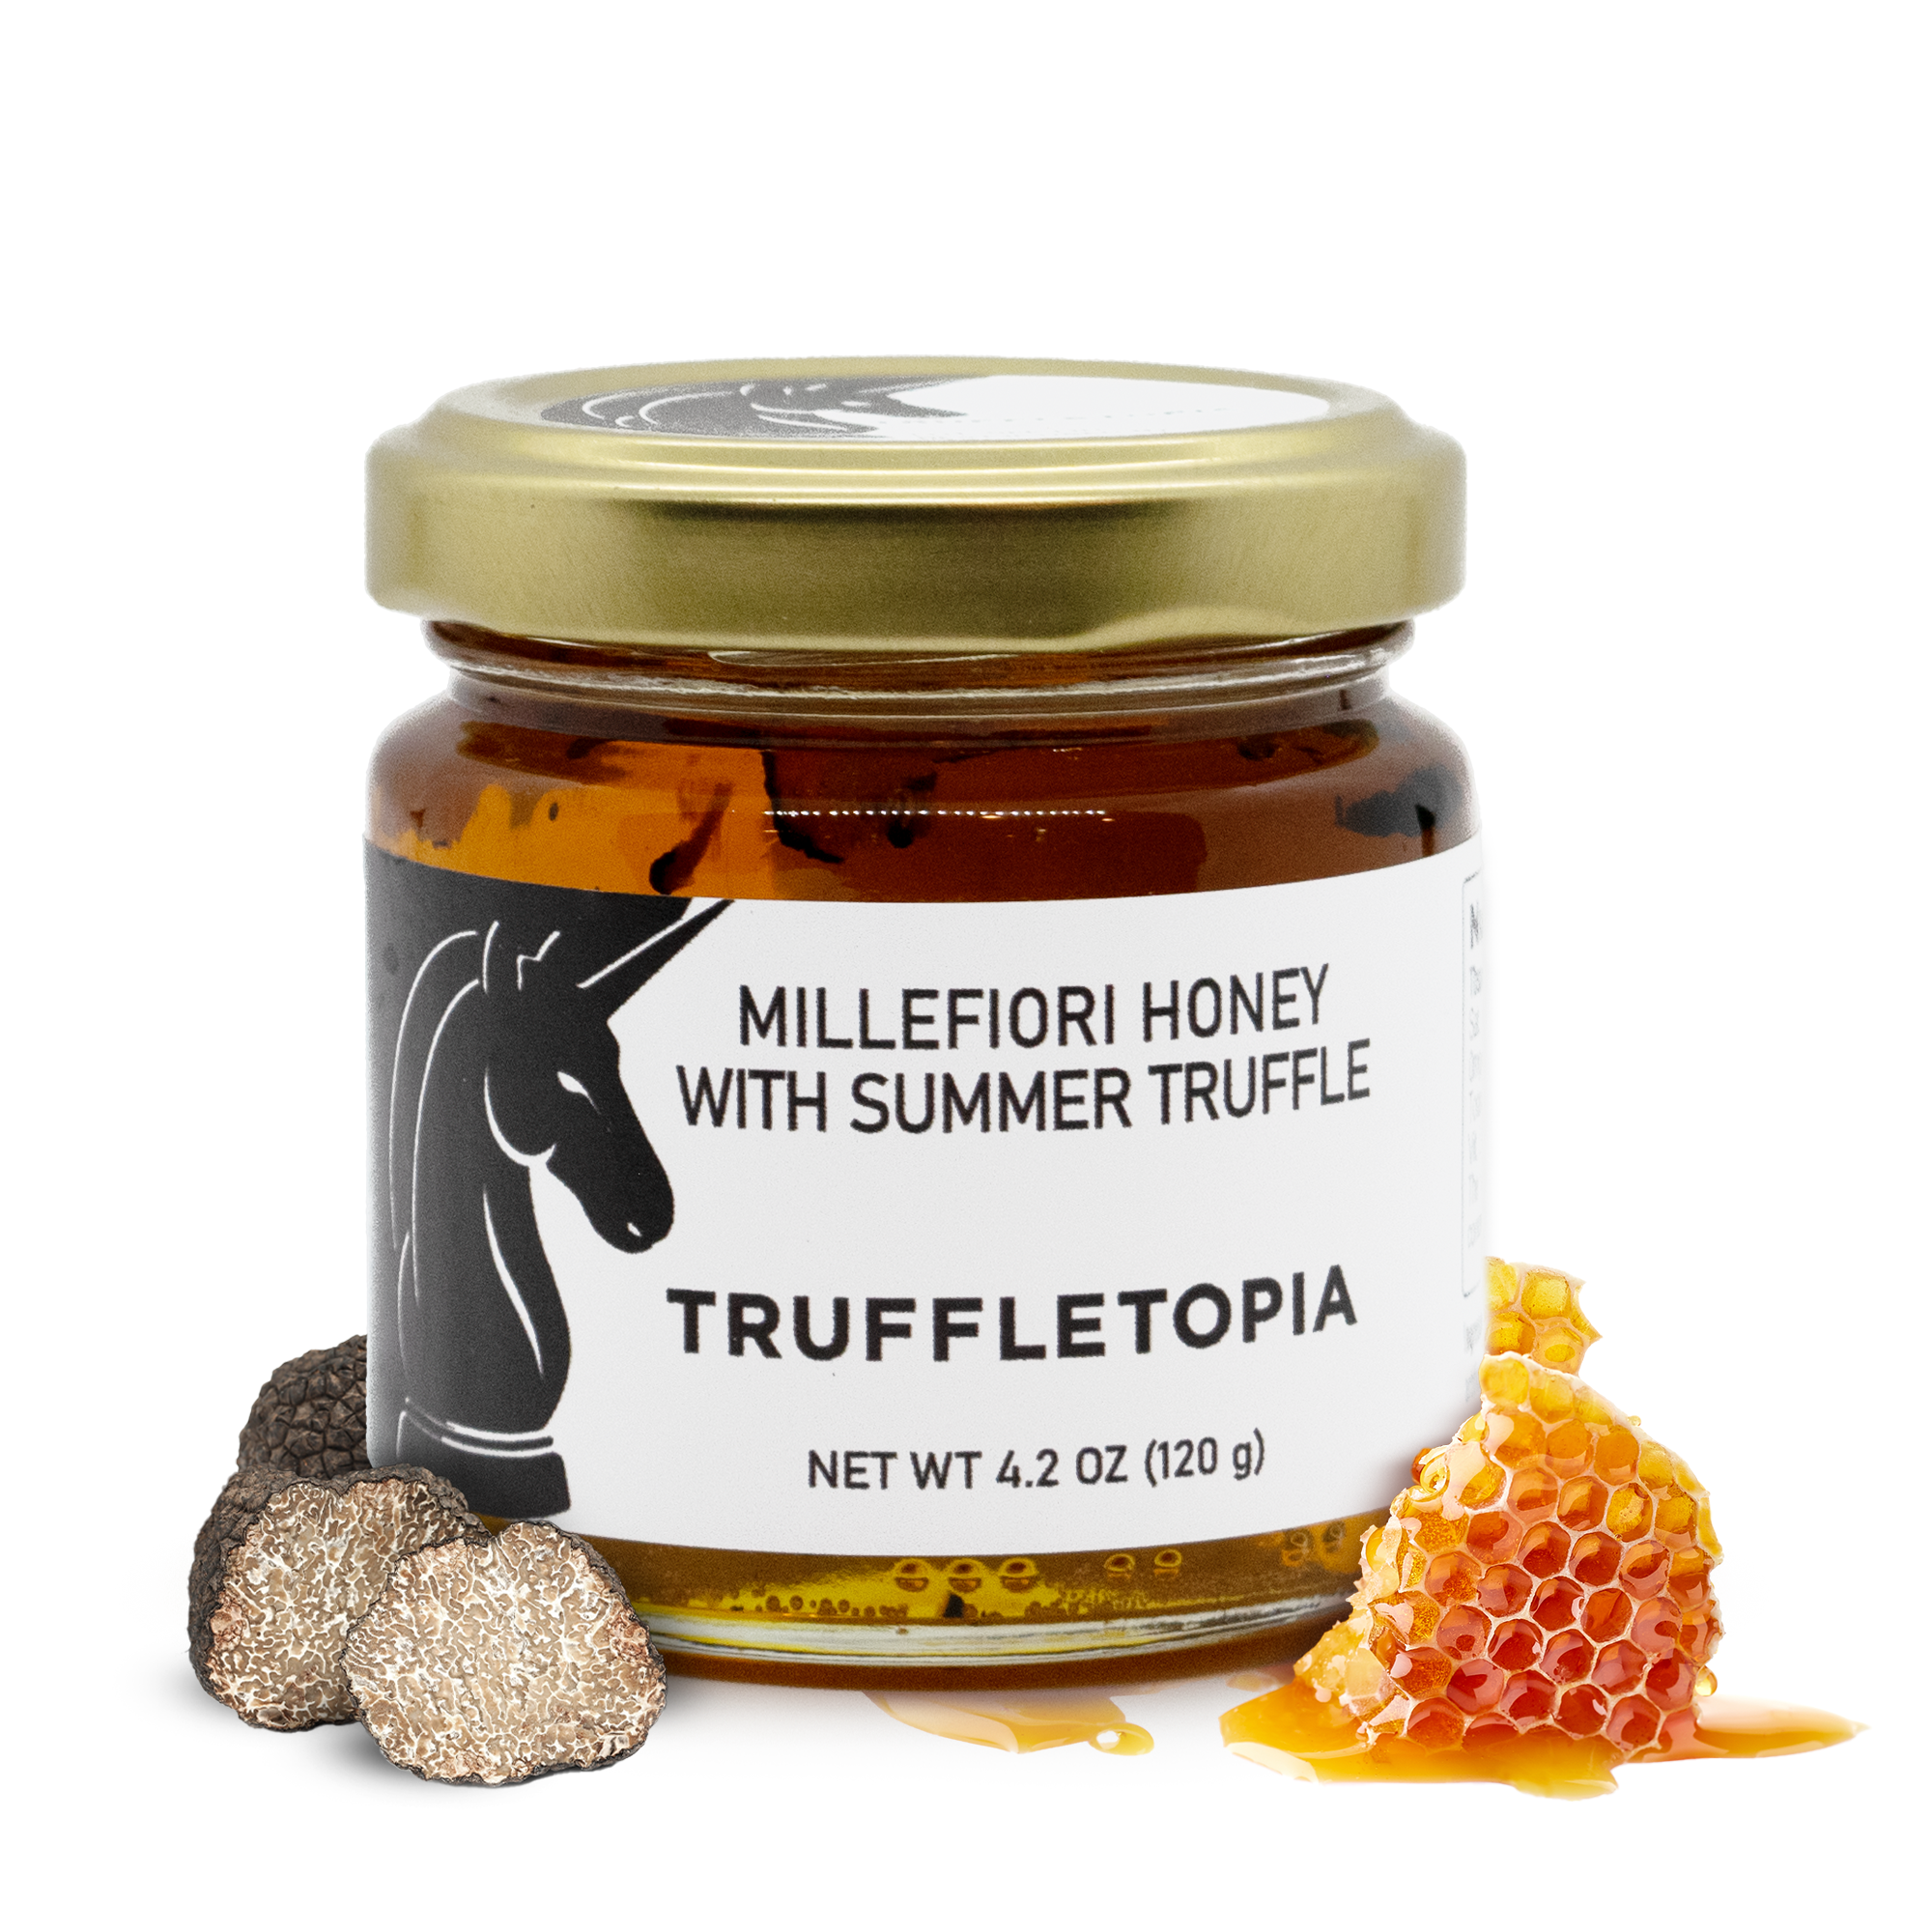 Millefiori Honey with Summer Truffle – Truffletopia